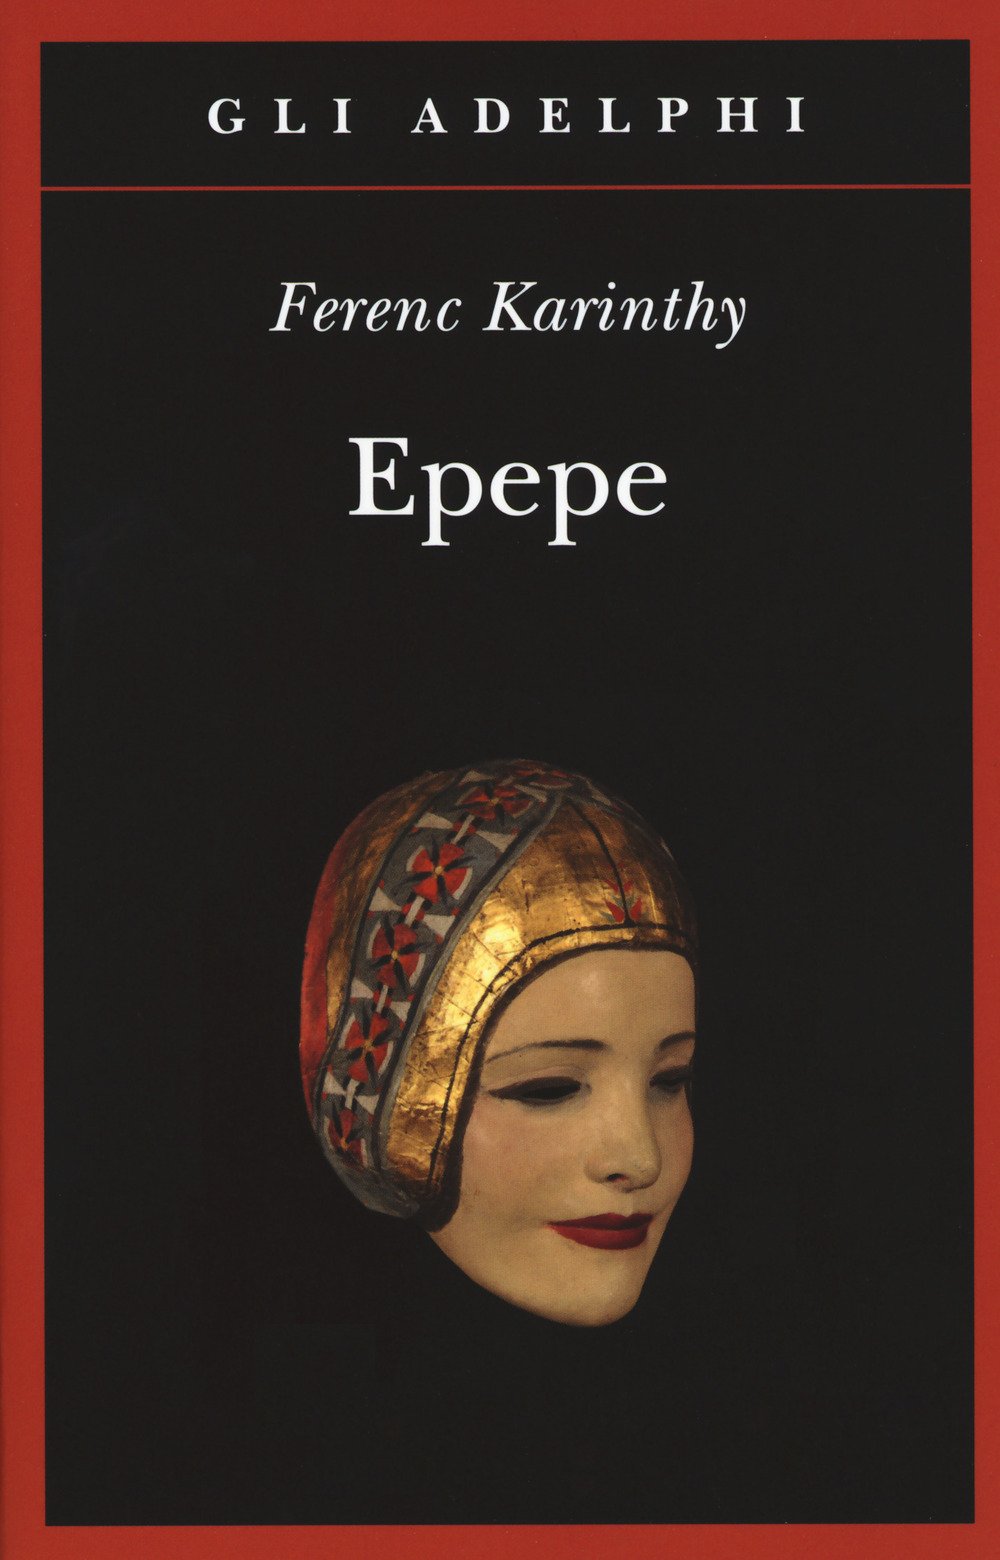 Epepe - Ferenc Karinthy - Adelphi